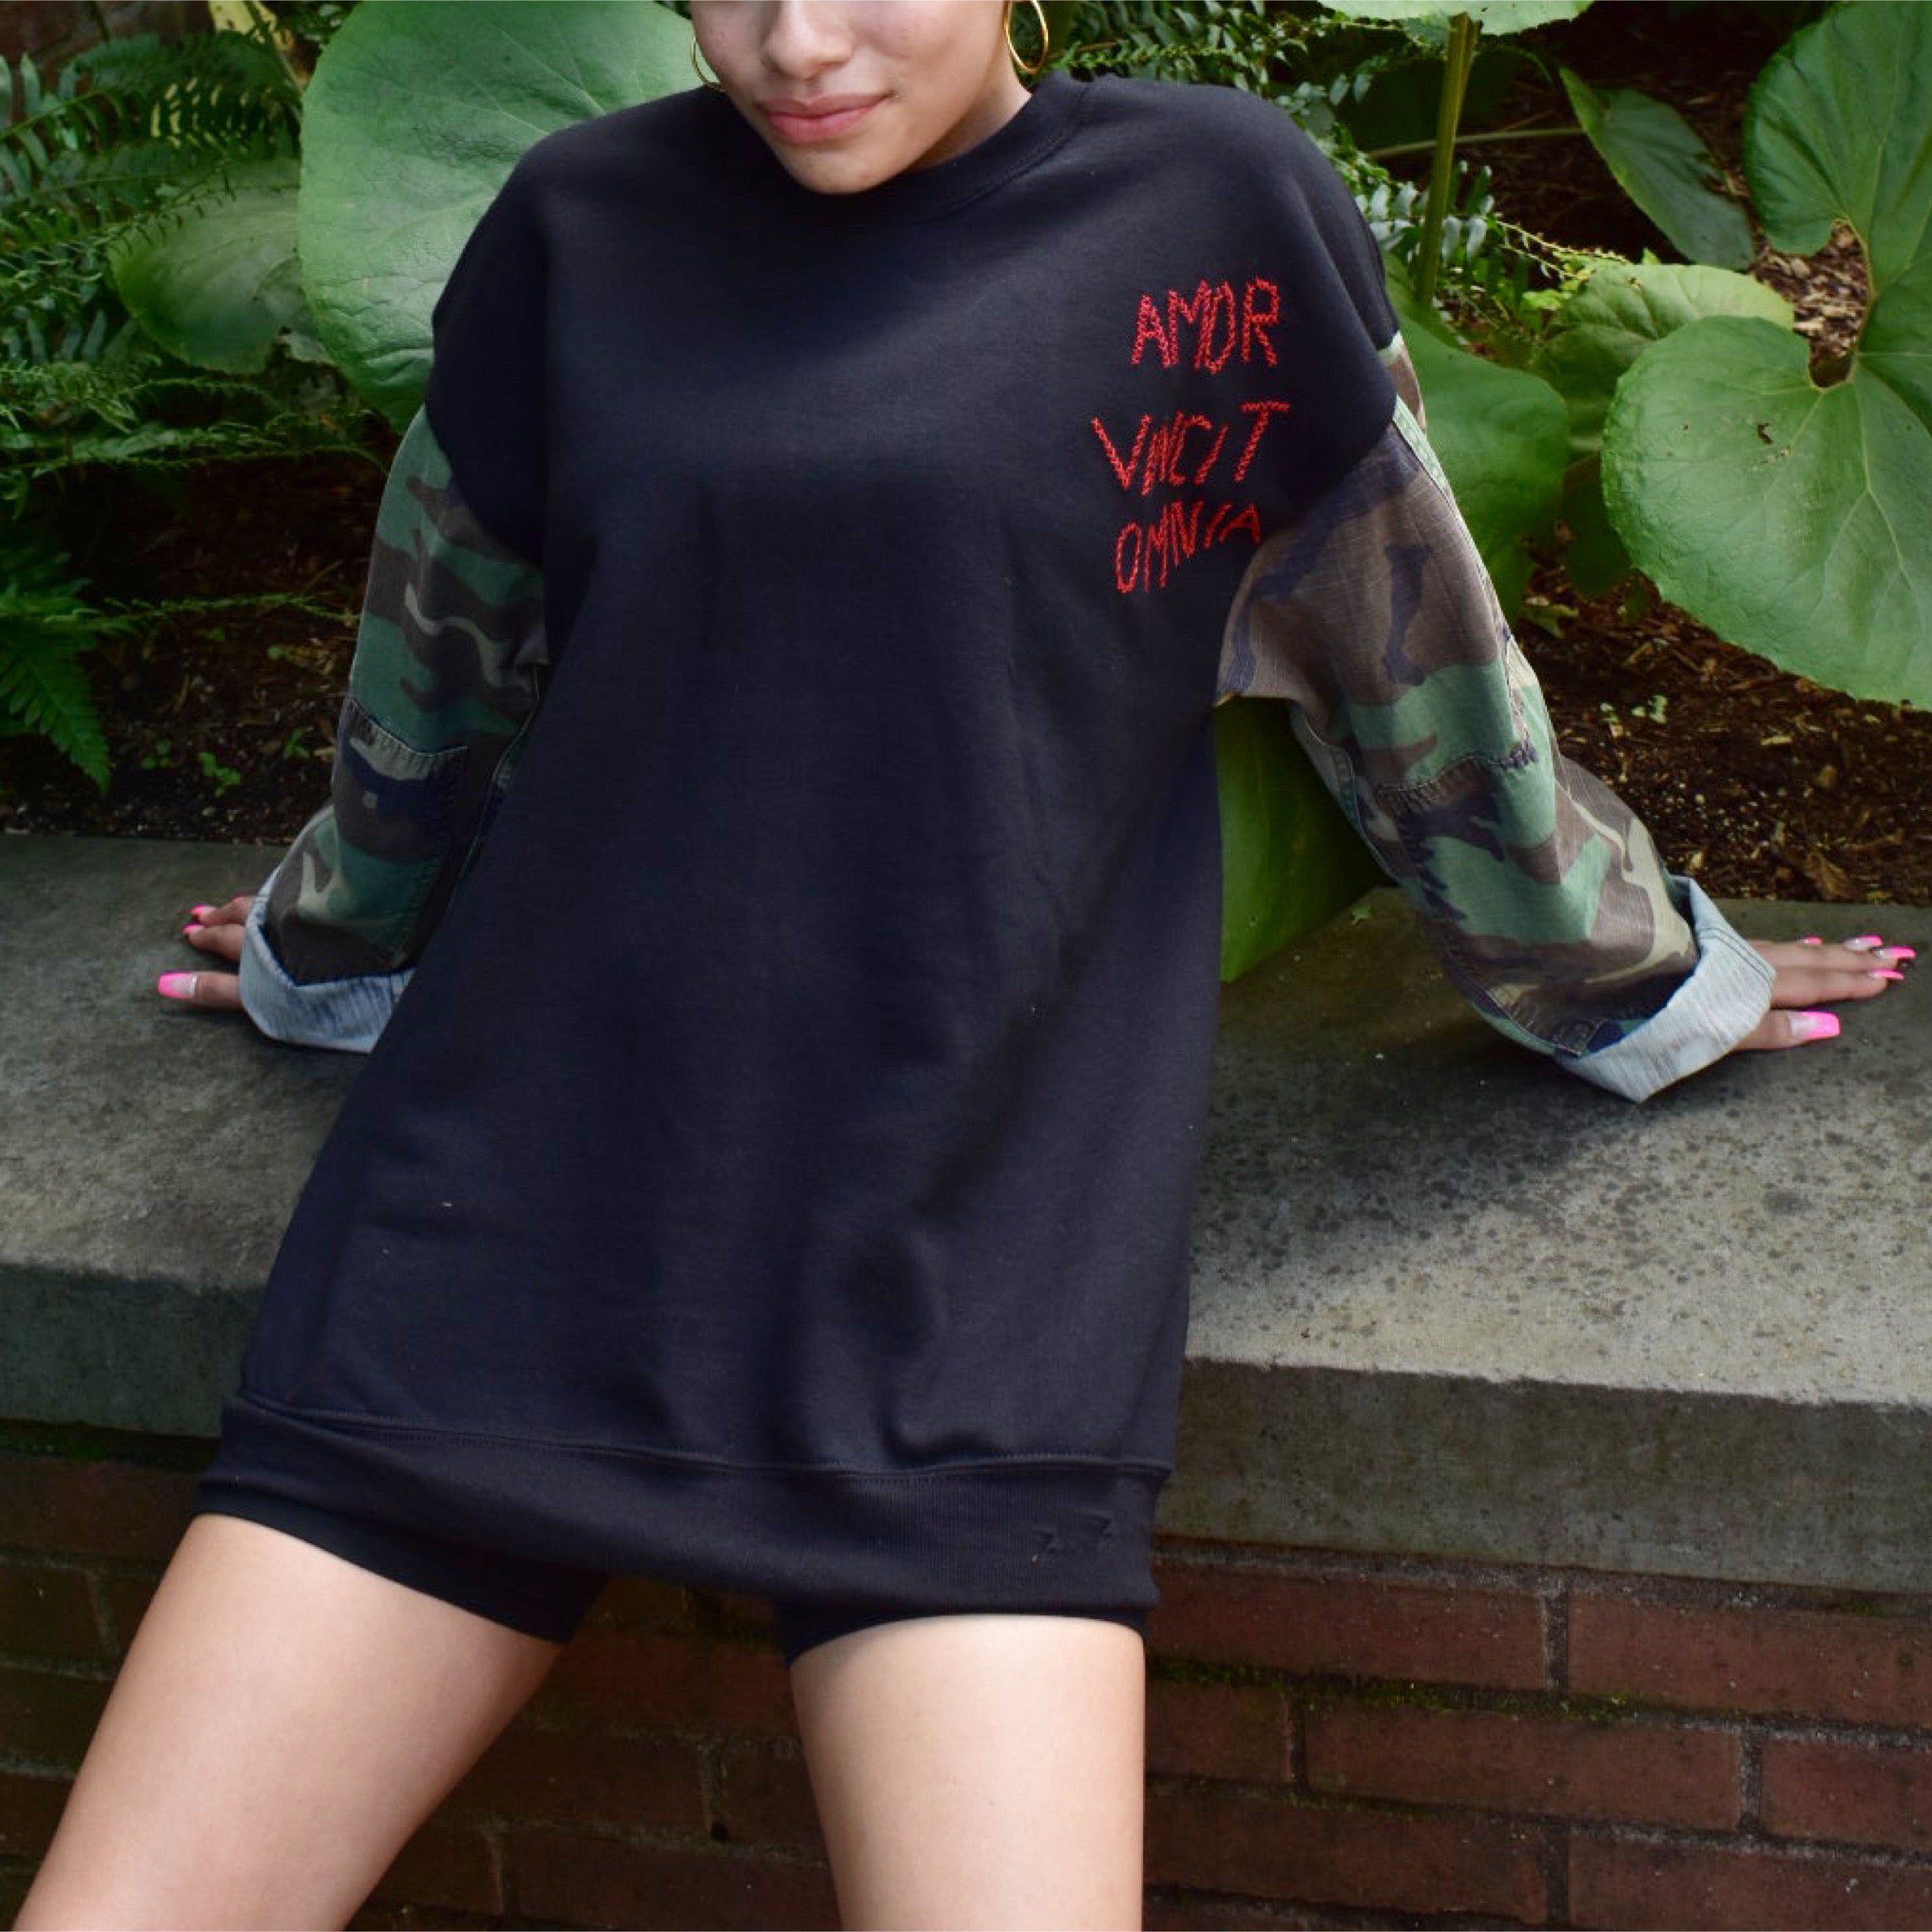 Love Army Sweatshirt with camo sleeves